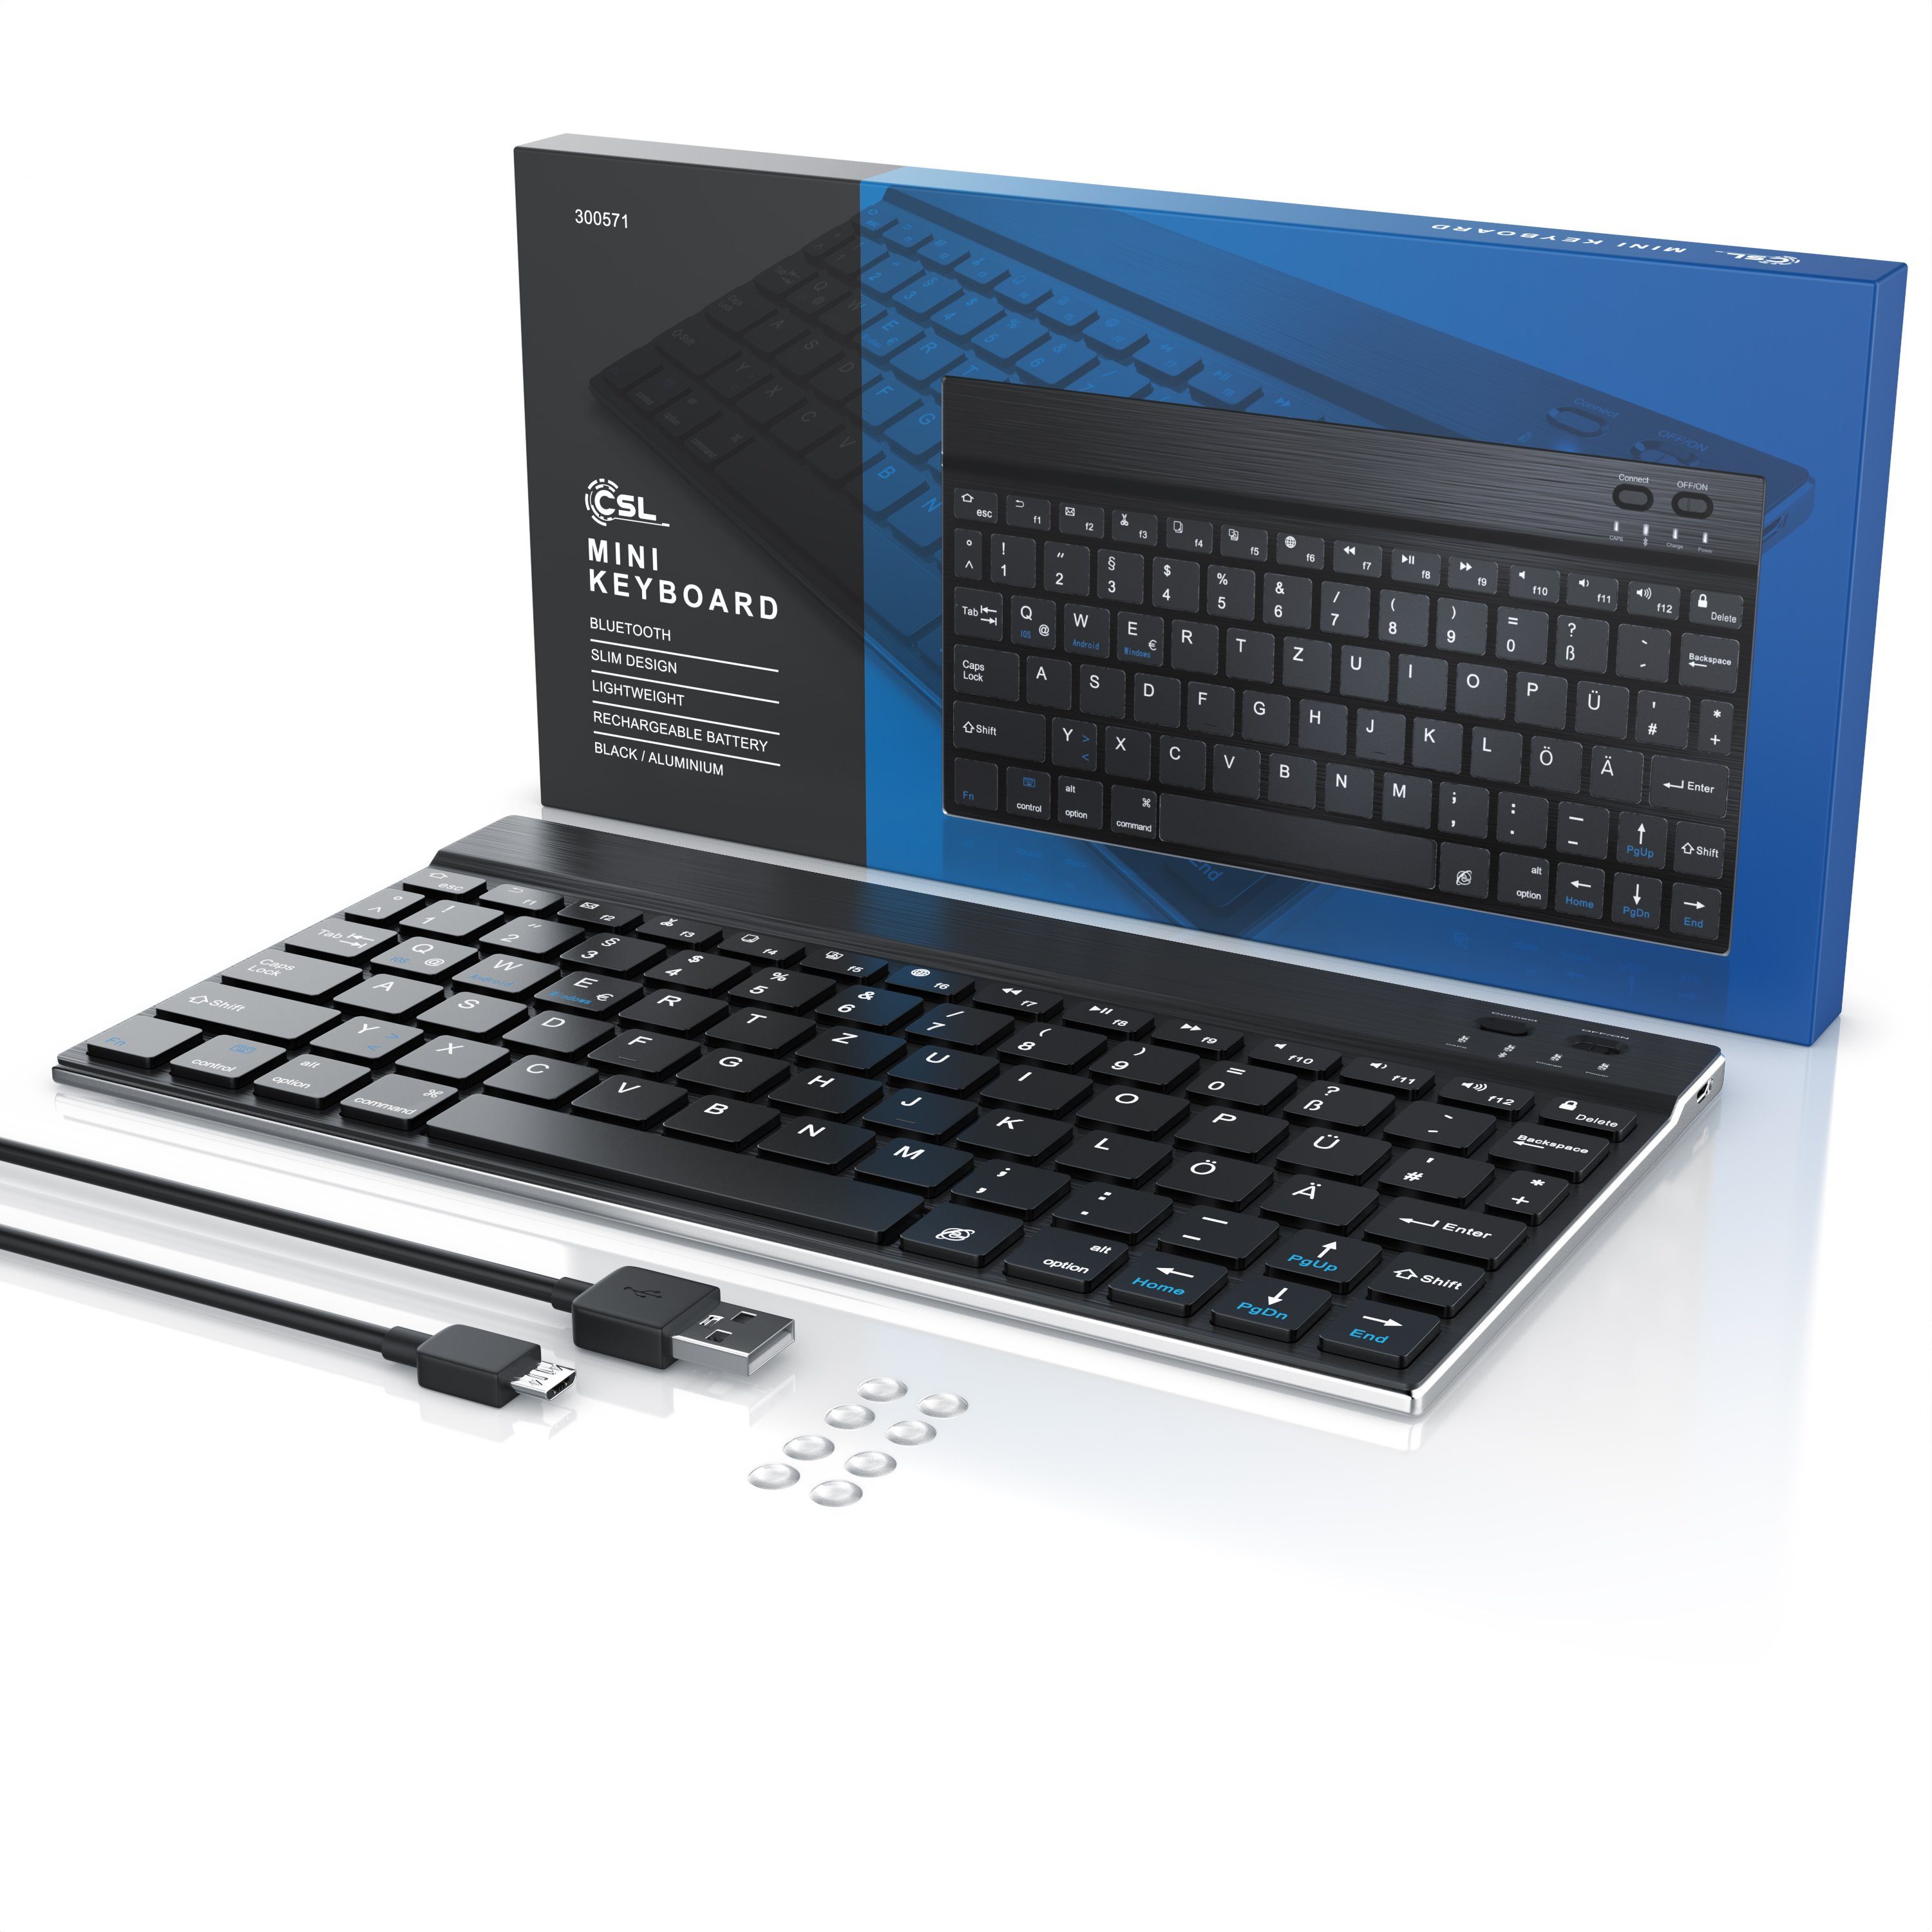 BT 3.0) Wireless-Tastatur CSL Deutsches Alugehäuse, Layout, Keyboard, Bluetooth, Slim schwarz/silber (Ultra